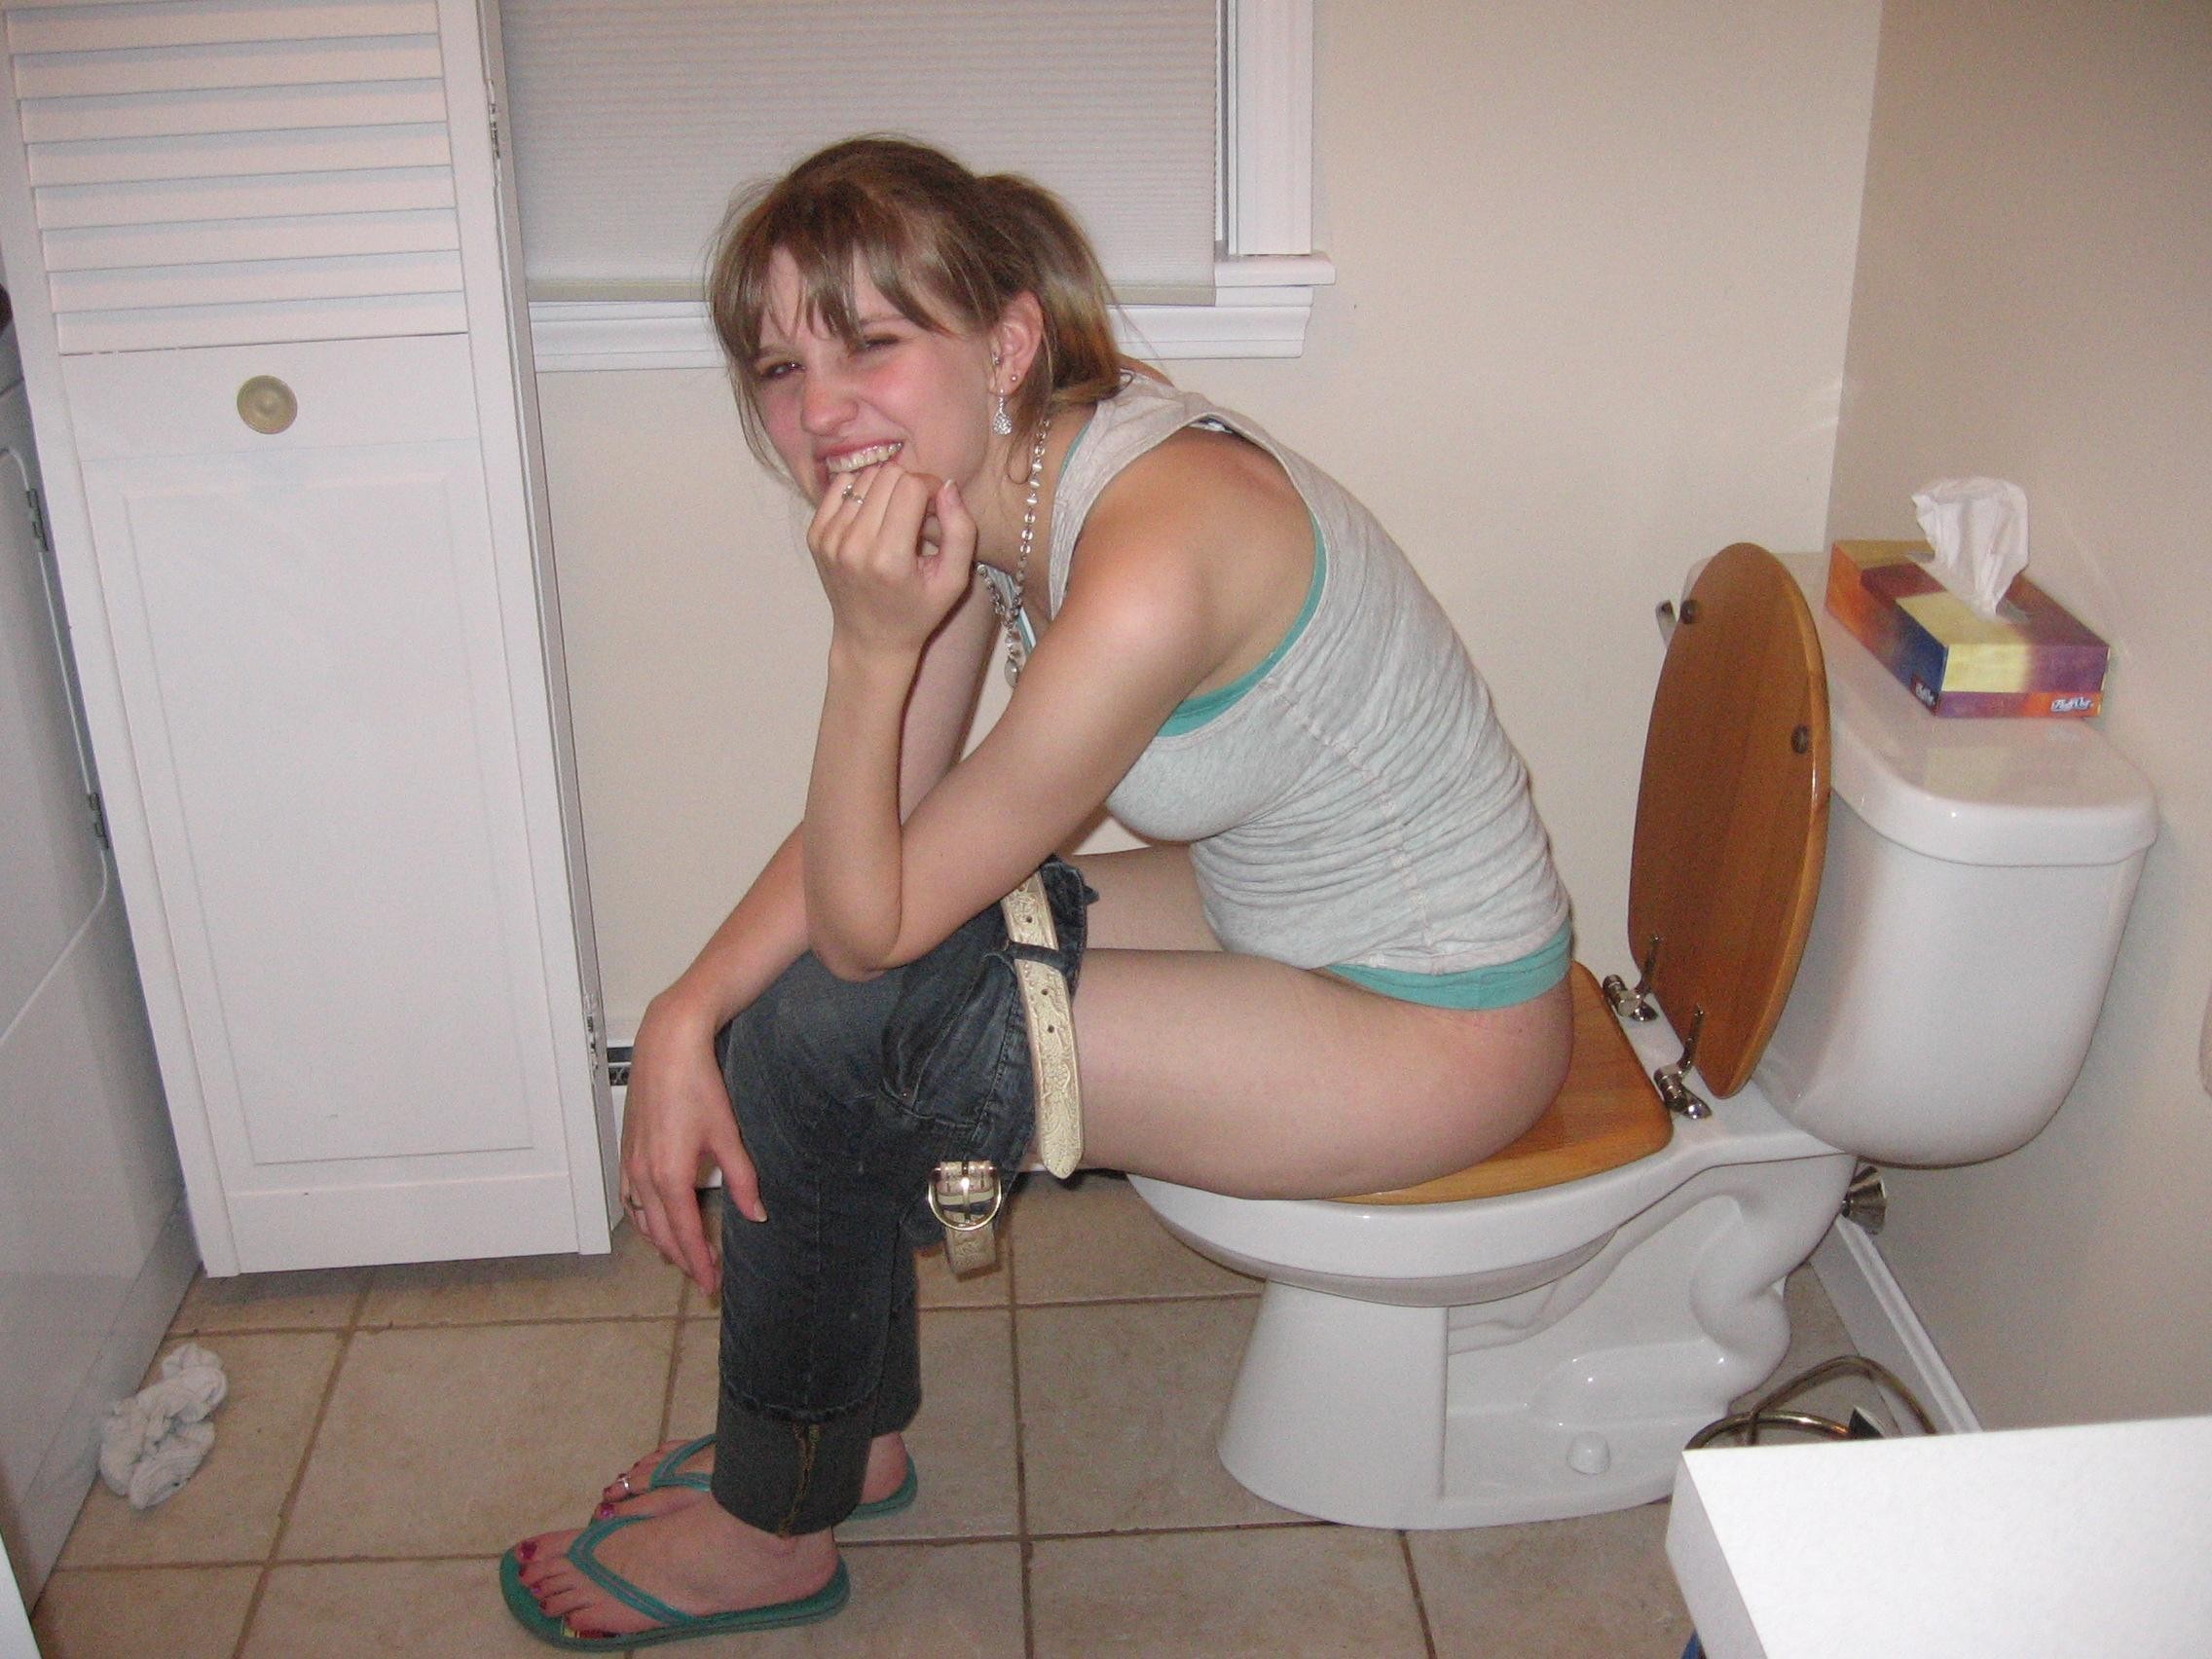 Girls Caught Peeing On Toilet